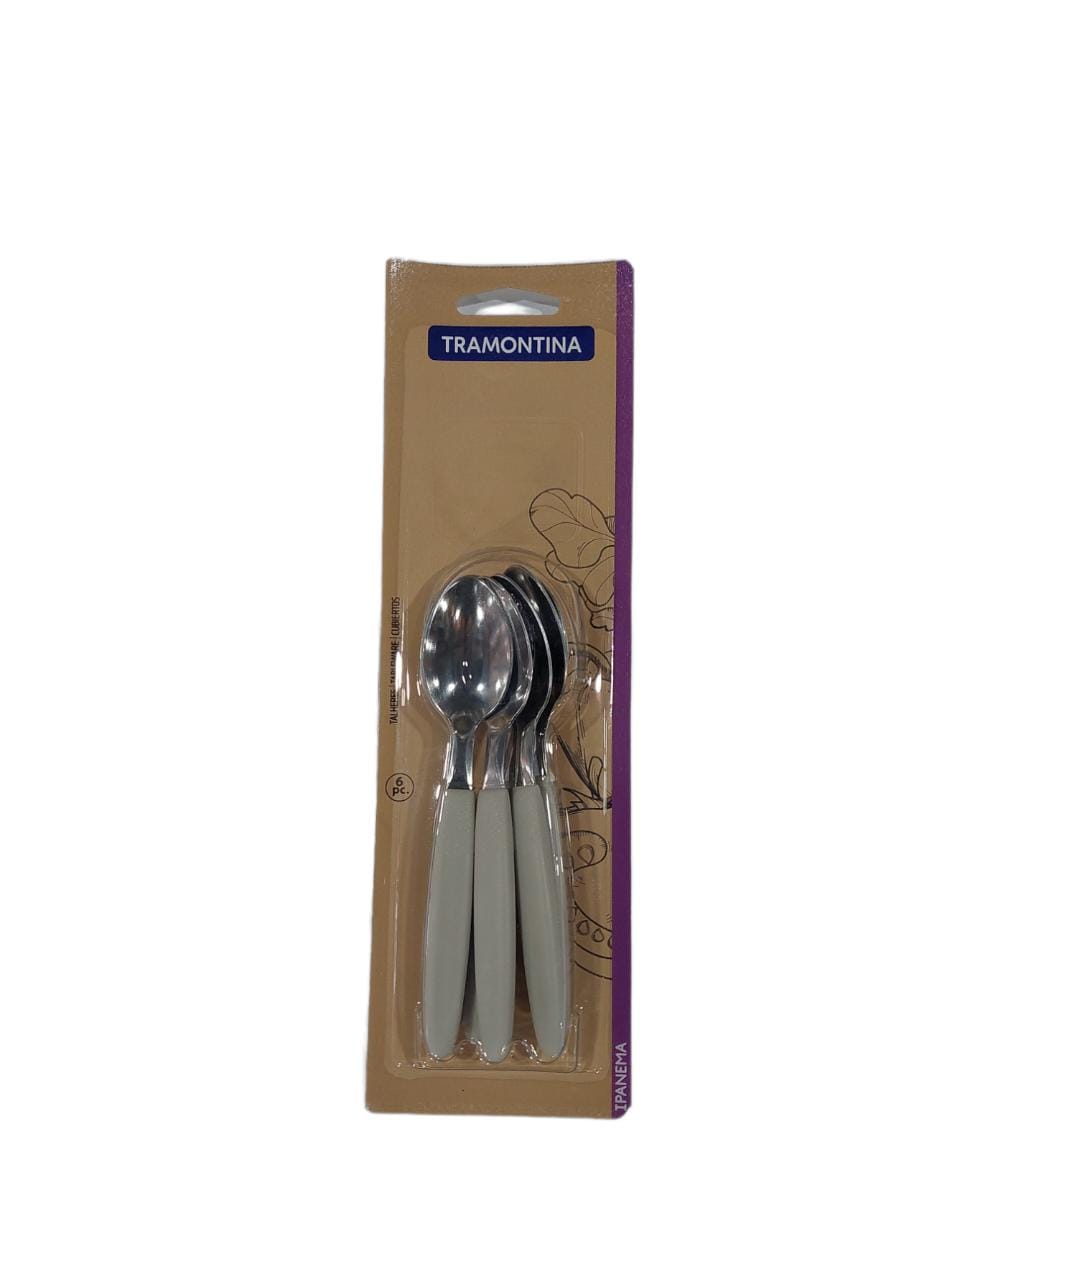 Tenedores Ipanema set x6 Tramontina  acero/plástico  13cm